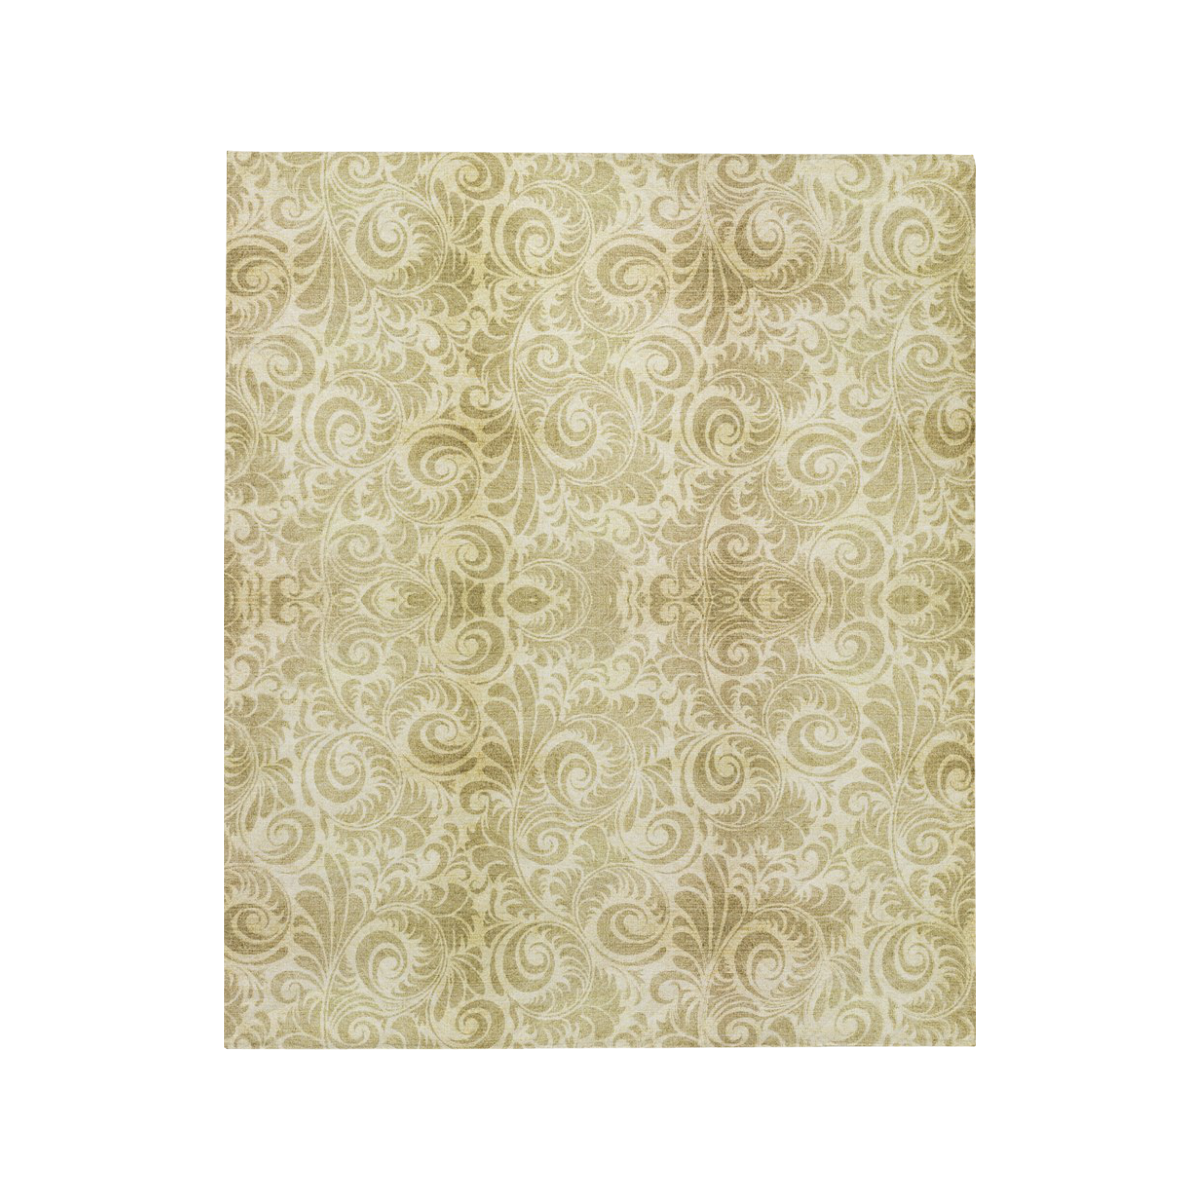 Denim, vintage floral pattern, beige gold yellow Quilt 50"x60"